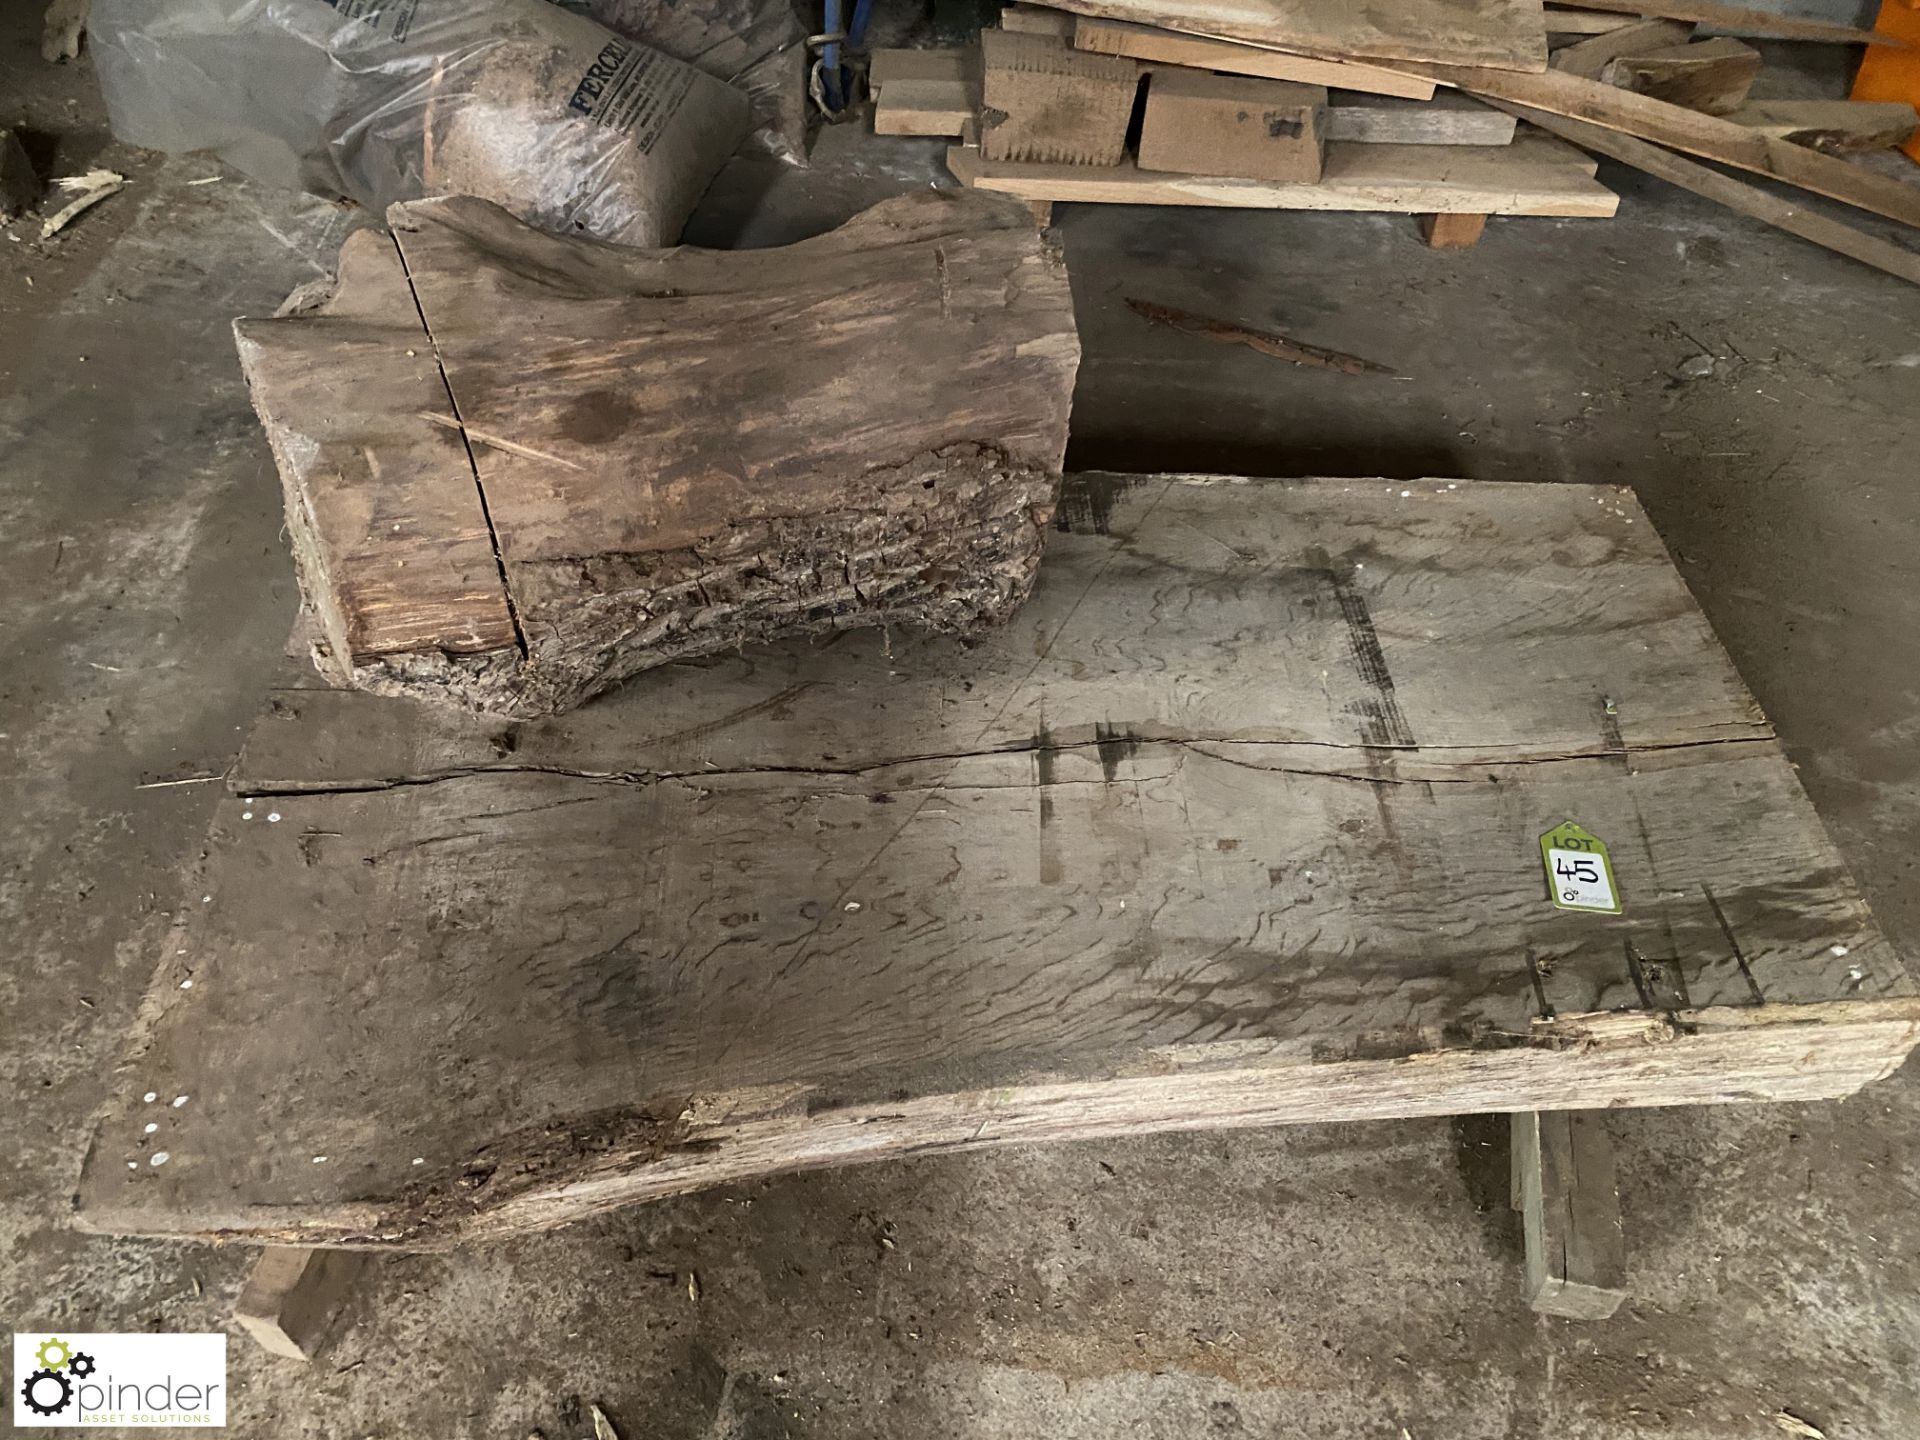 Air dried Oak Board, 1670mm x 1050mm x 220mm and air dried Oak Stump, 850mm x 450mm diameter - Image 3 of 5